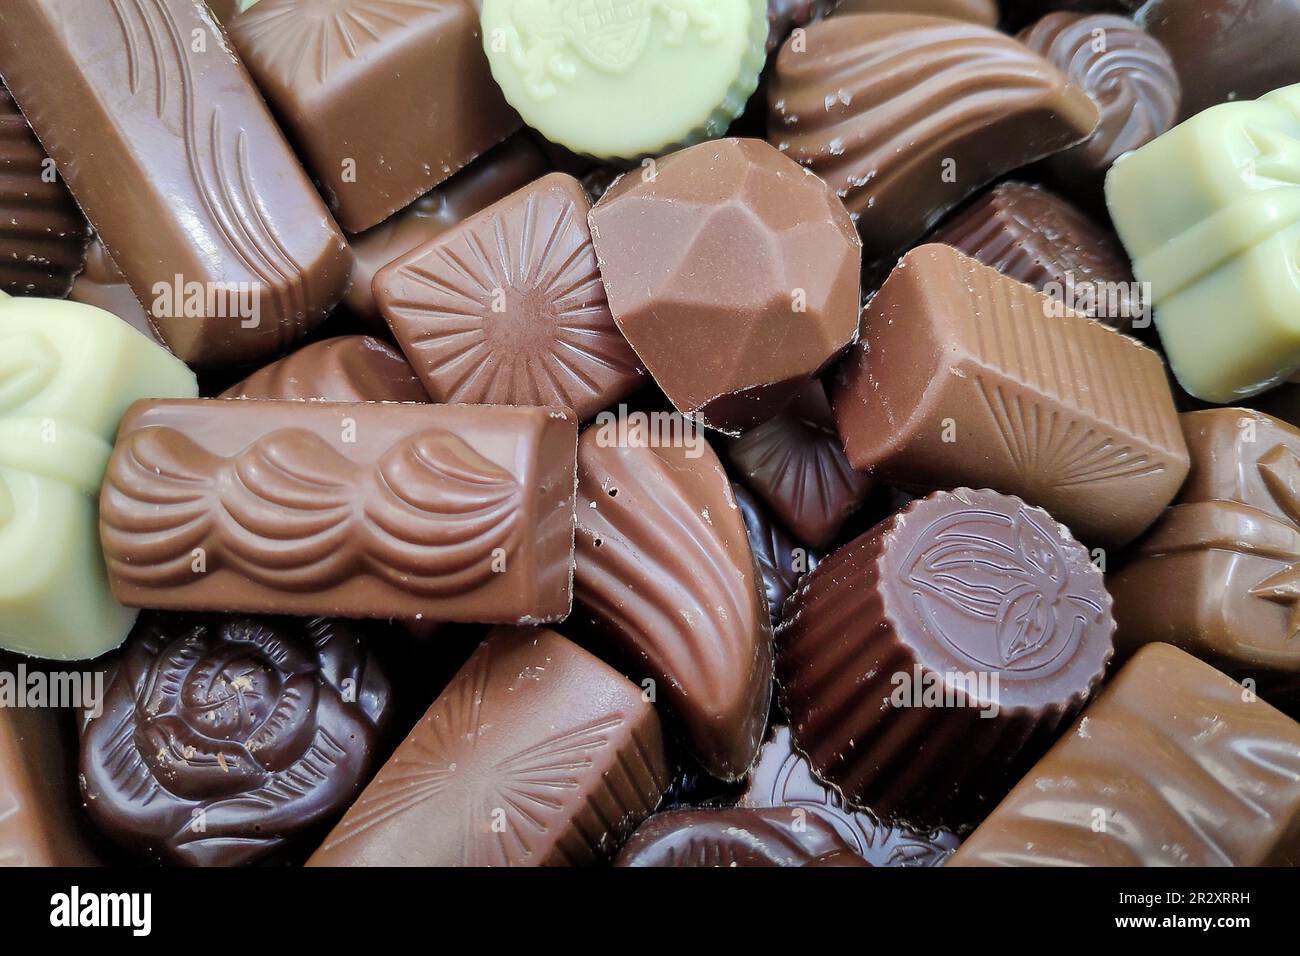 Assortimento di caramelle al cioccolato pregiate, dolci al cioccolato bianco, scuro e al latte. Foto Stock